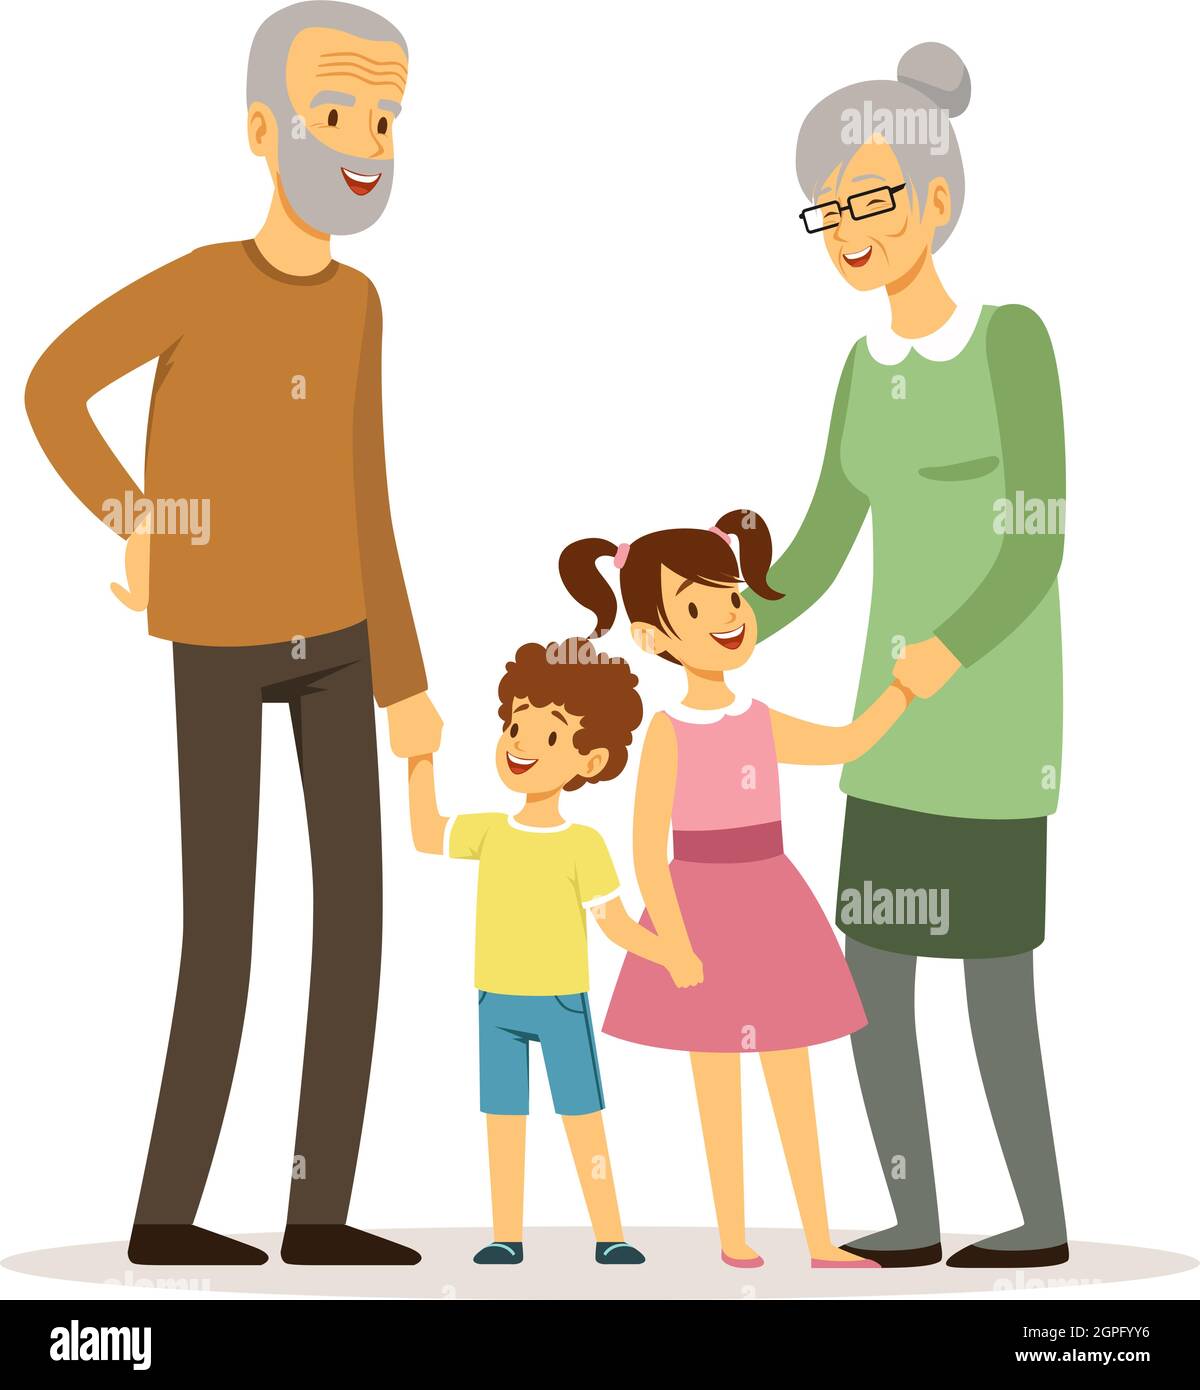 Glückliche Großeltern. Lächelnde ältere Frau Mann mit Kindern. Familienzeit, isolierte Cartoon-alte Menschen und junge Kinder. Junge Mädchen mit Erwachsenen Vektor Stock Vektor